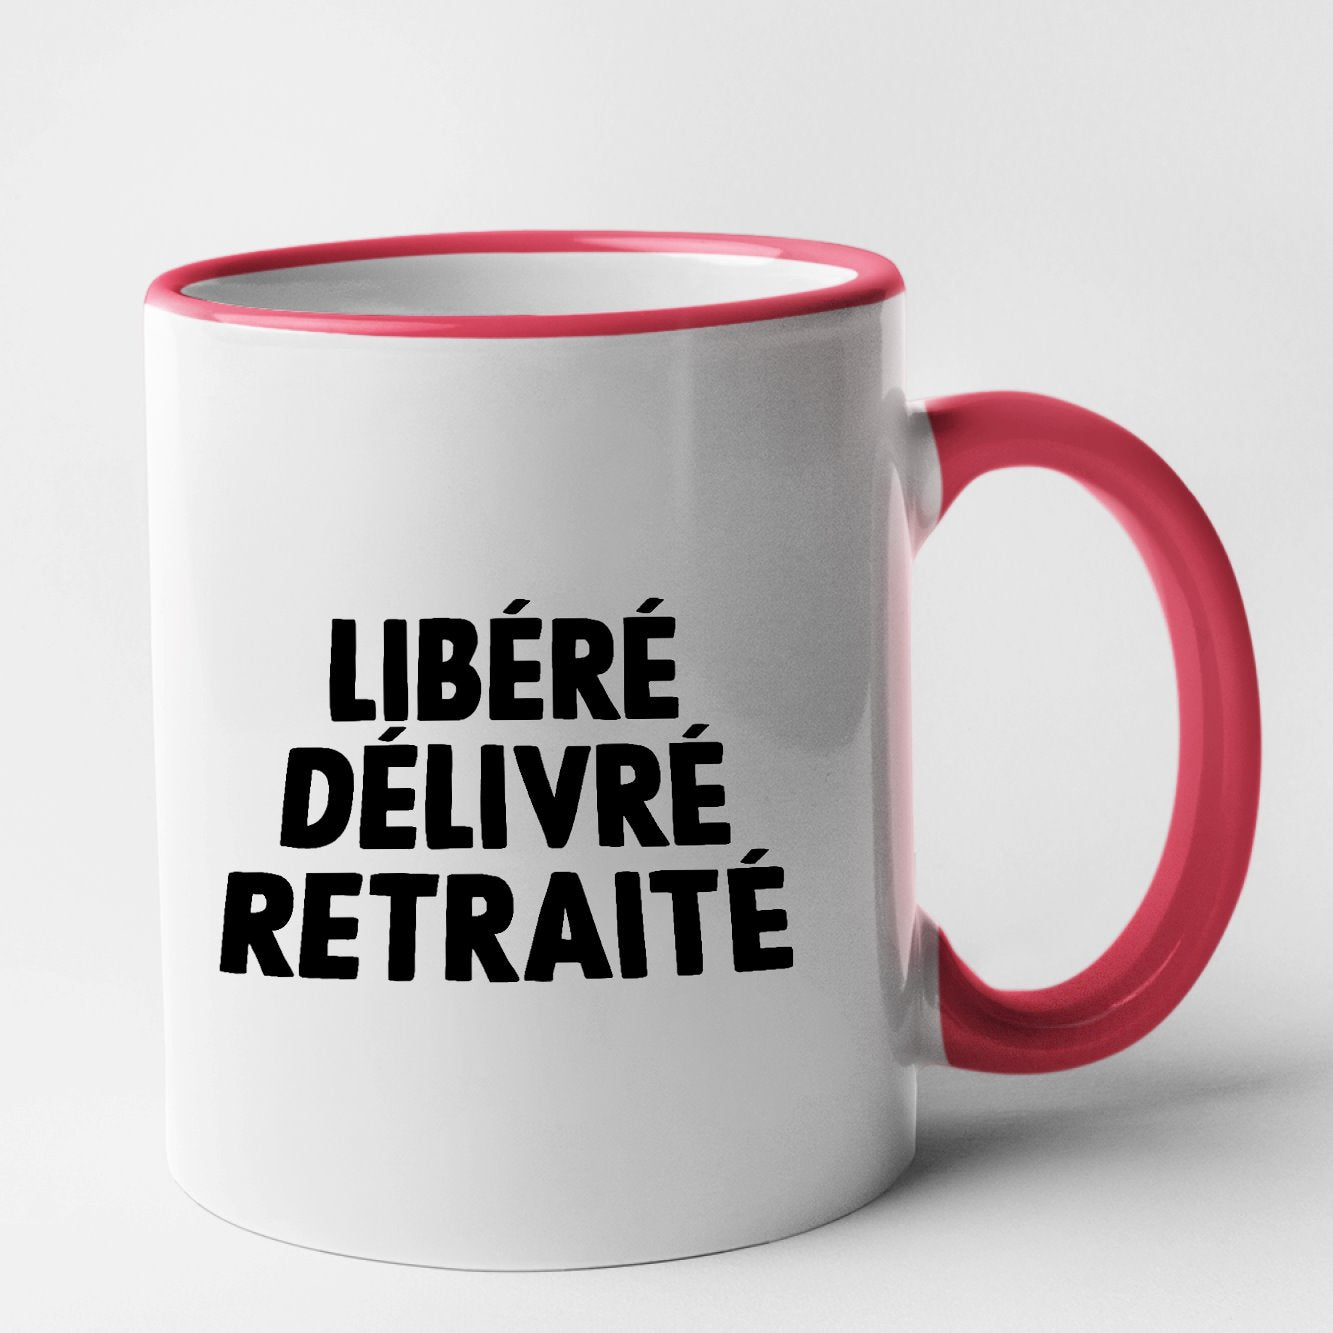 T-shirt - LIBÉRÉE DÉLIVRÉE DIVORCÉE